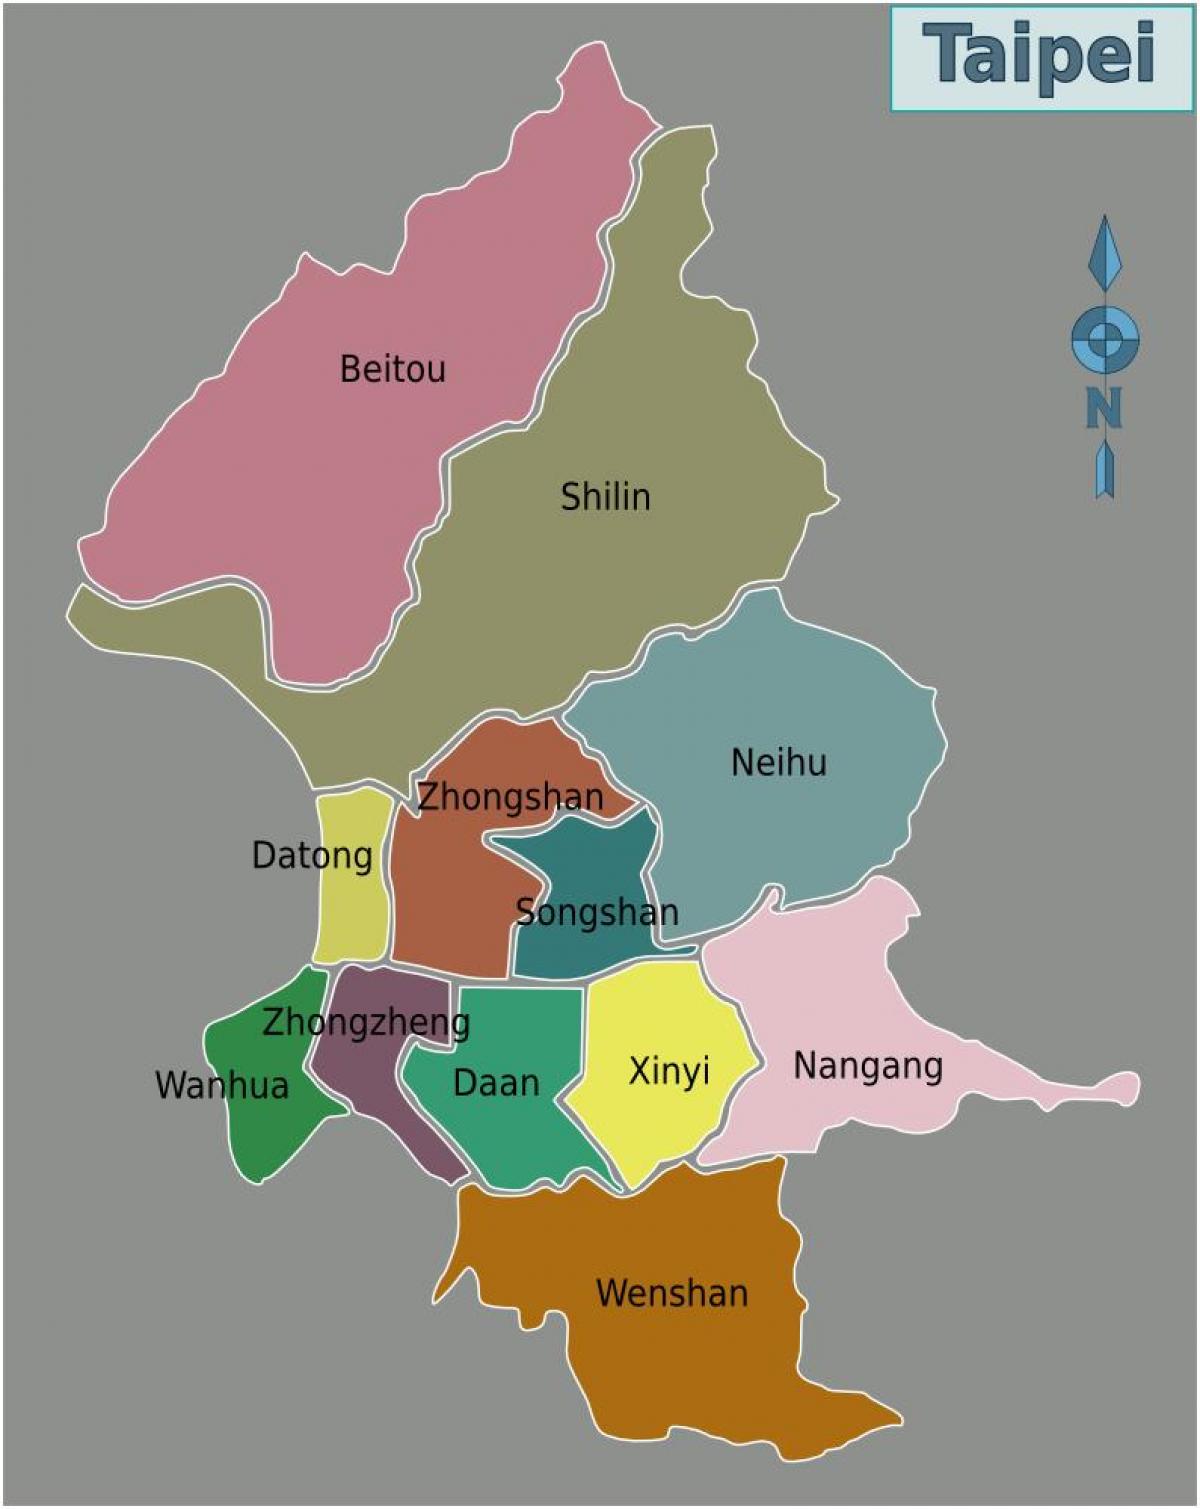 Taipei city district χάρτης